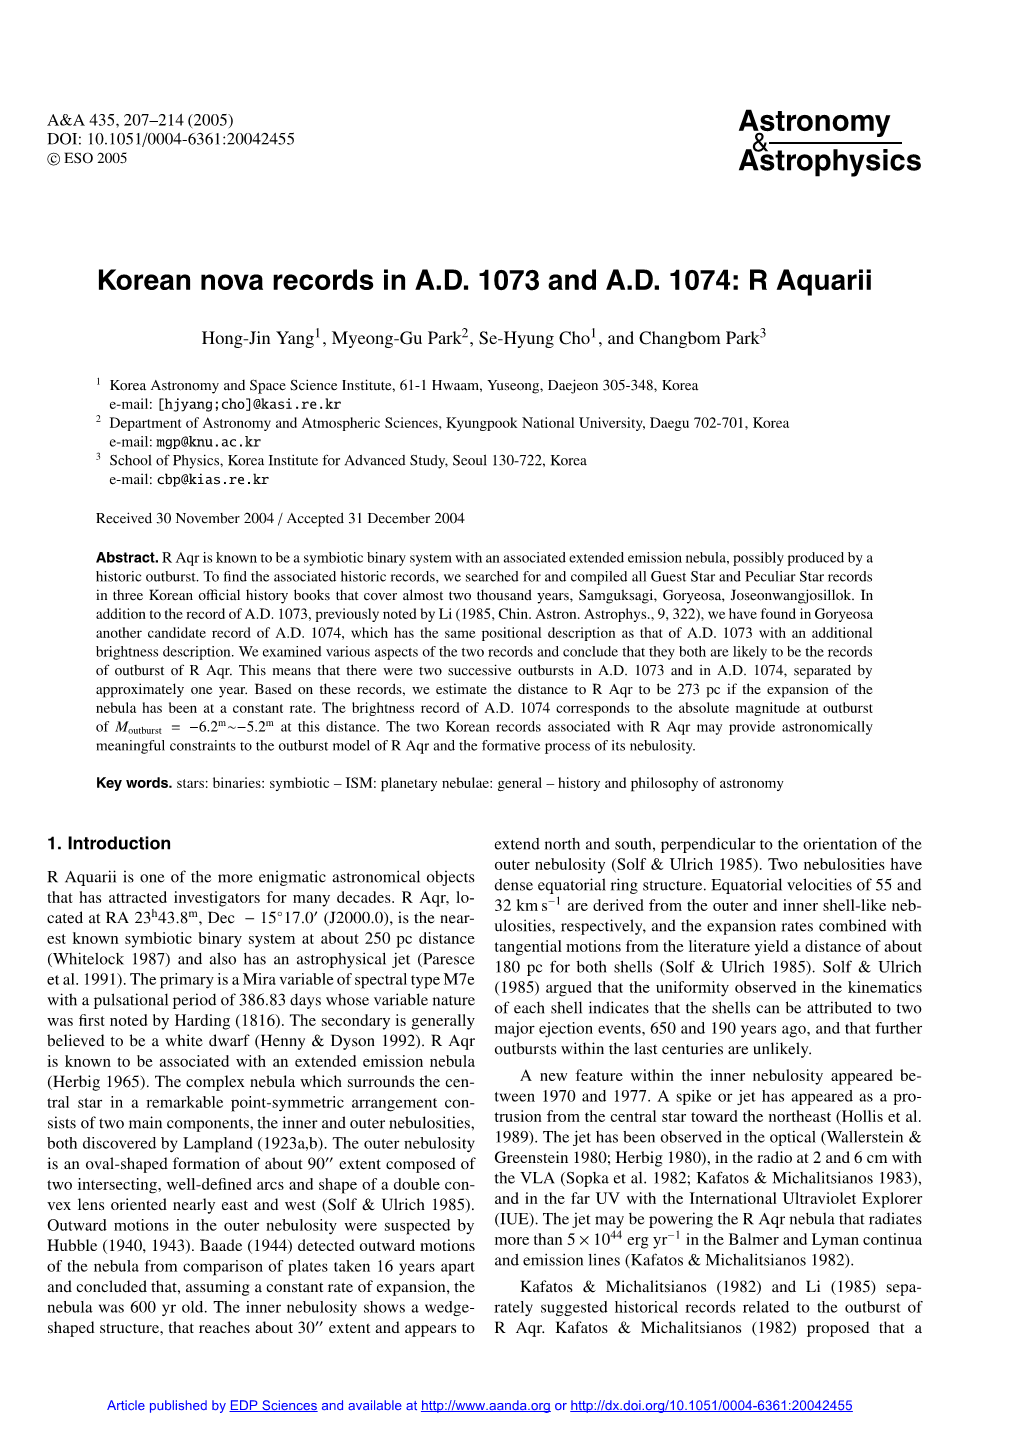 Korean Nova Records in A.D. 1073 and A.D. 1074: R Aquarii